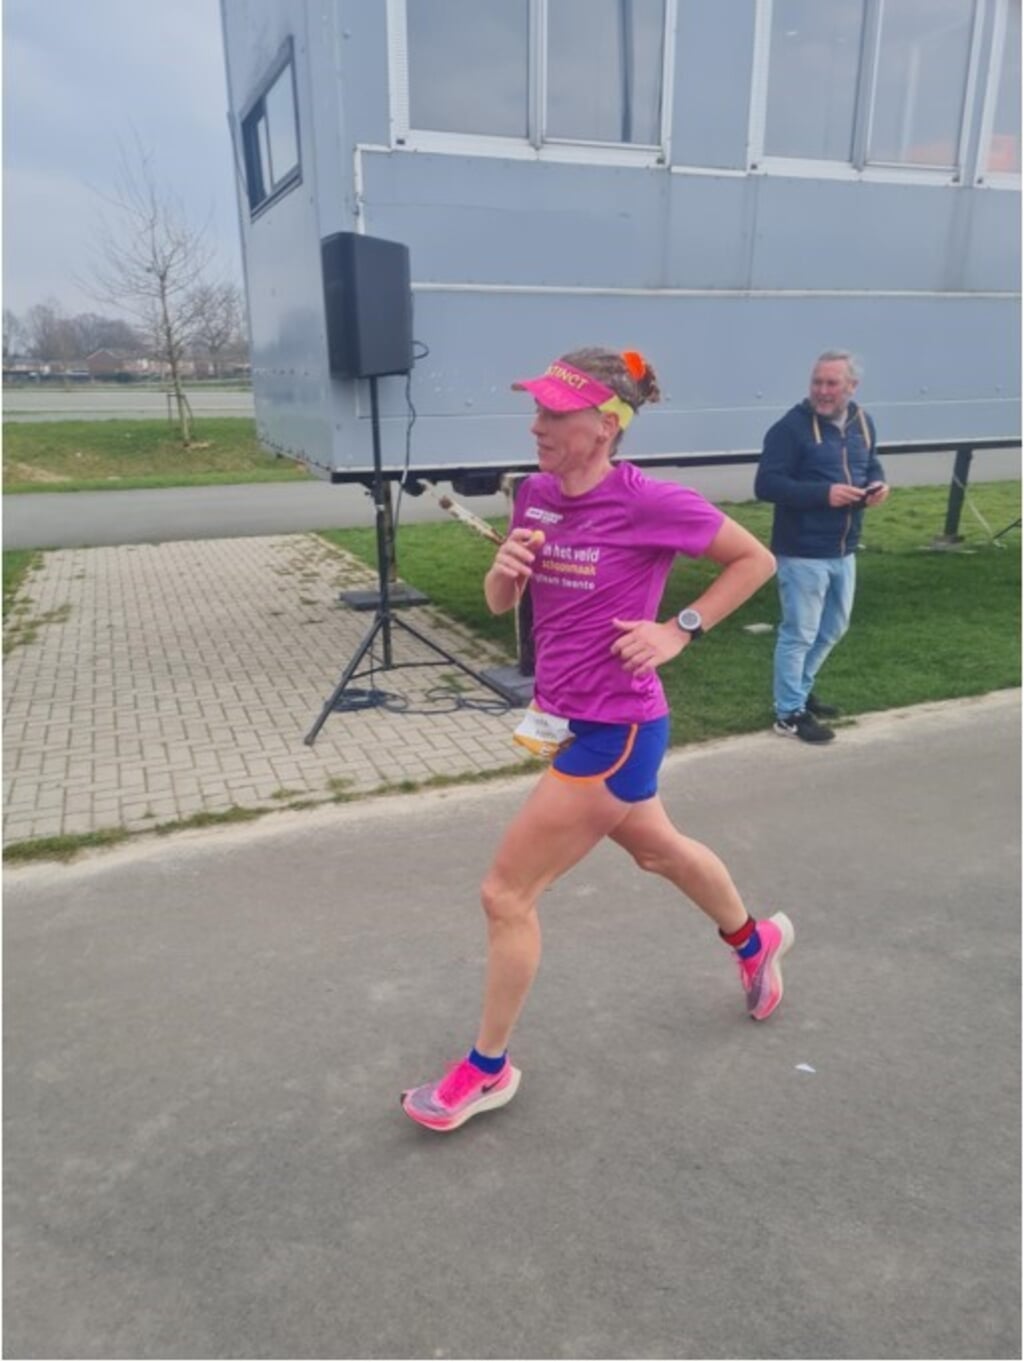 Ondanks dat Arenda Könnecke alleen liep, was haar tempo constant met 13,3 km/u. 